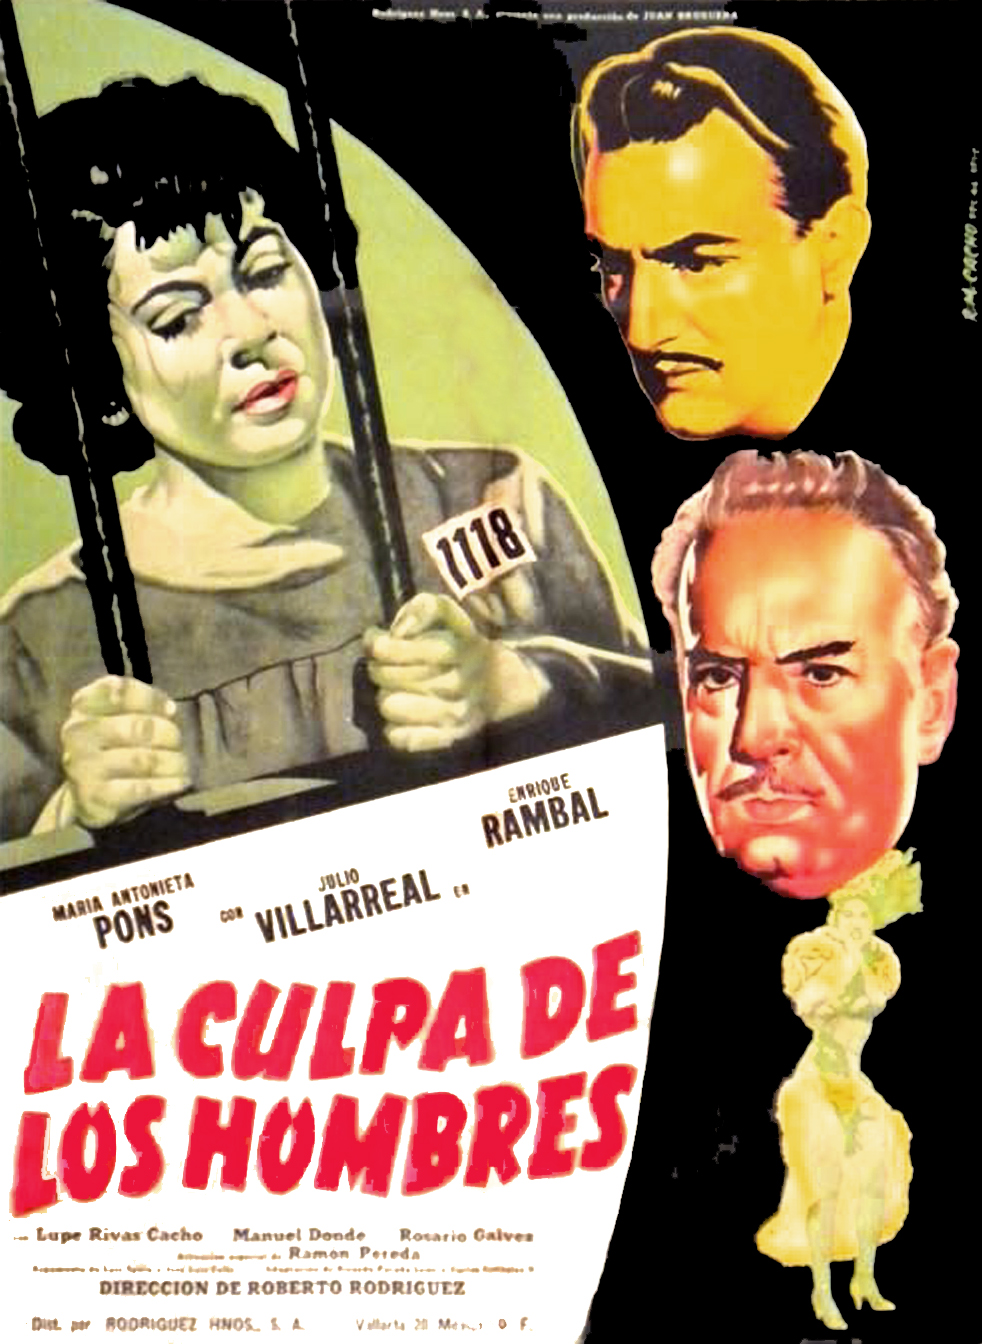 La culpa de los hombres (1955) with English Subtitles on DVD on DVD